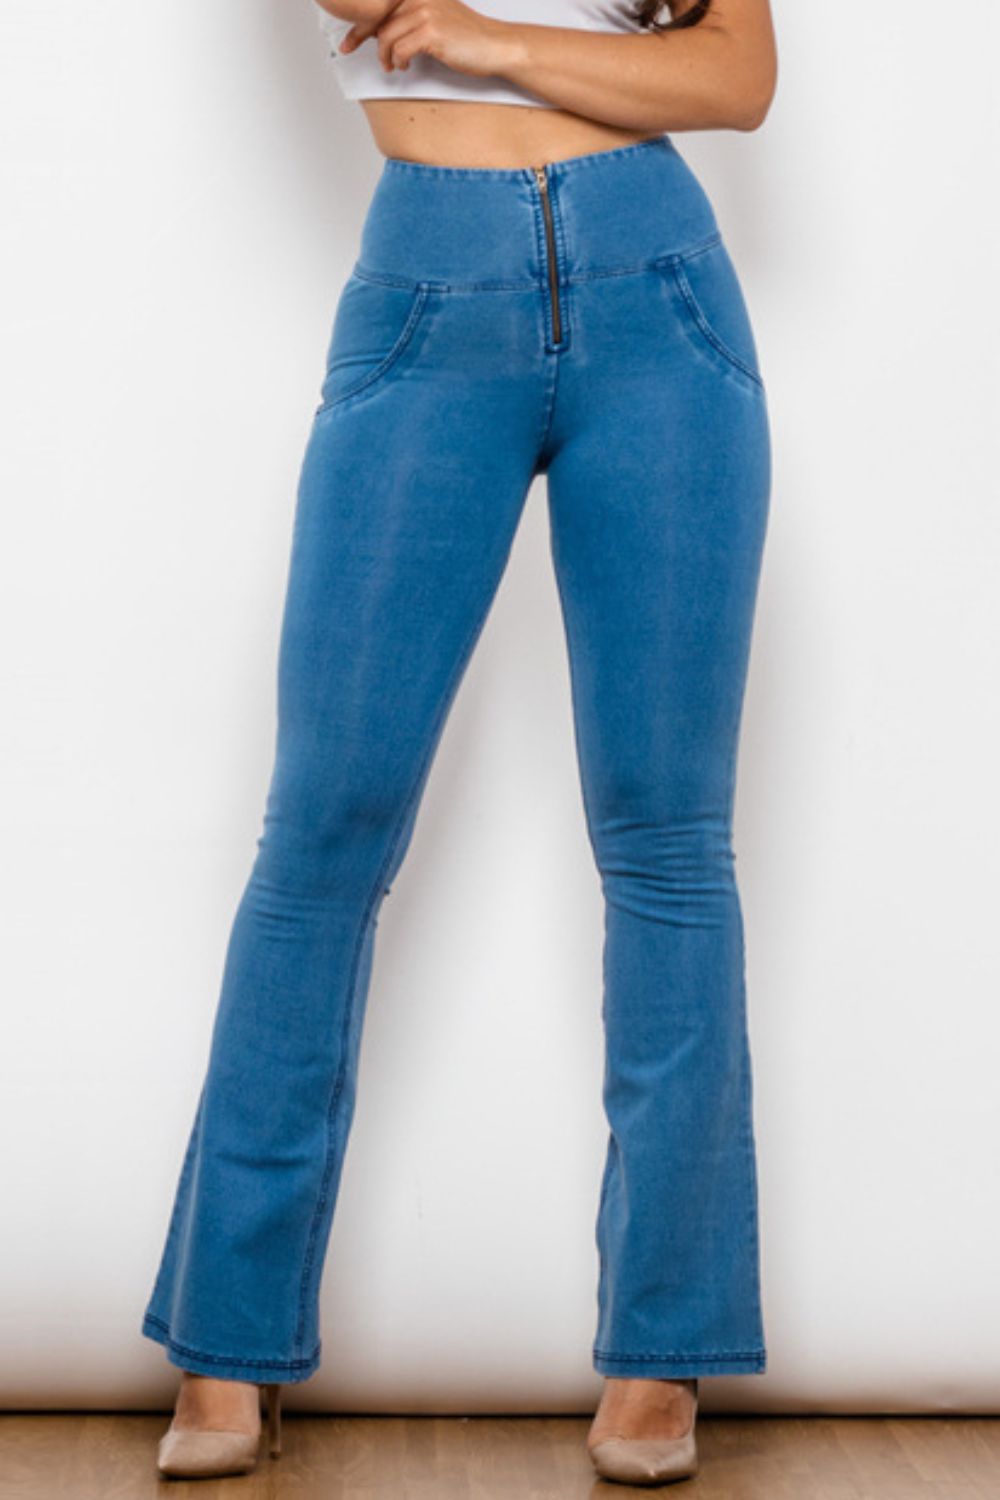 Zip-Up Wide Waistband Long Jeans - Medium / S - Bottoms - Pants - 1 - 2024